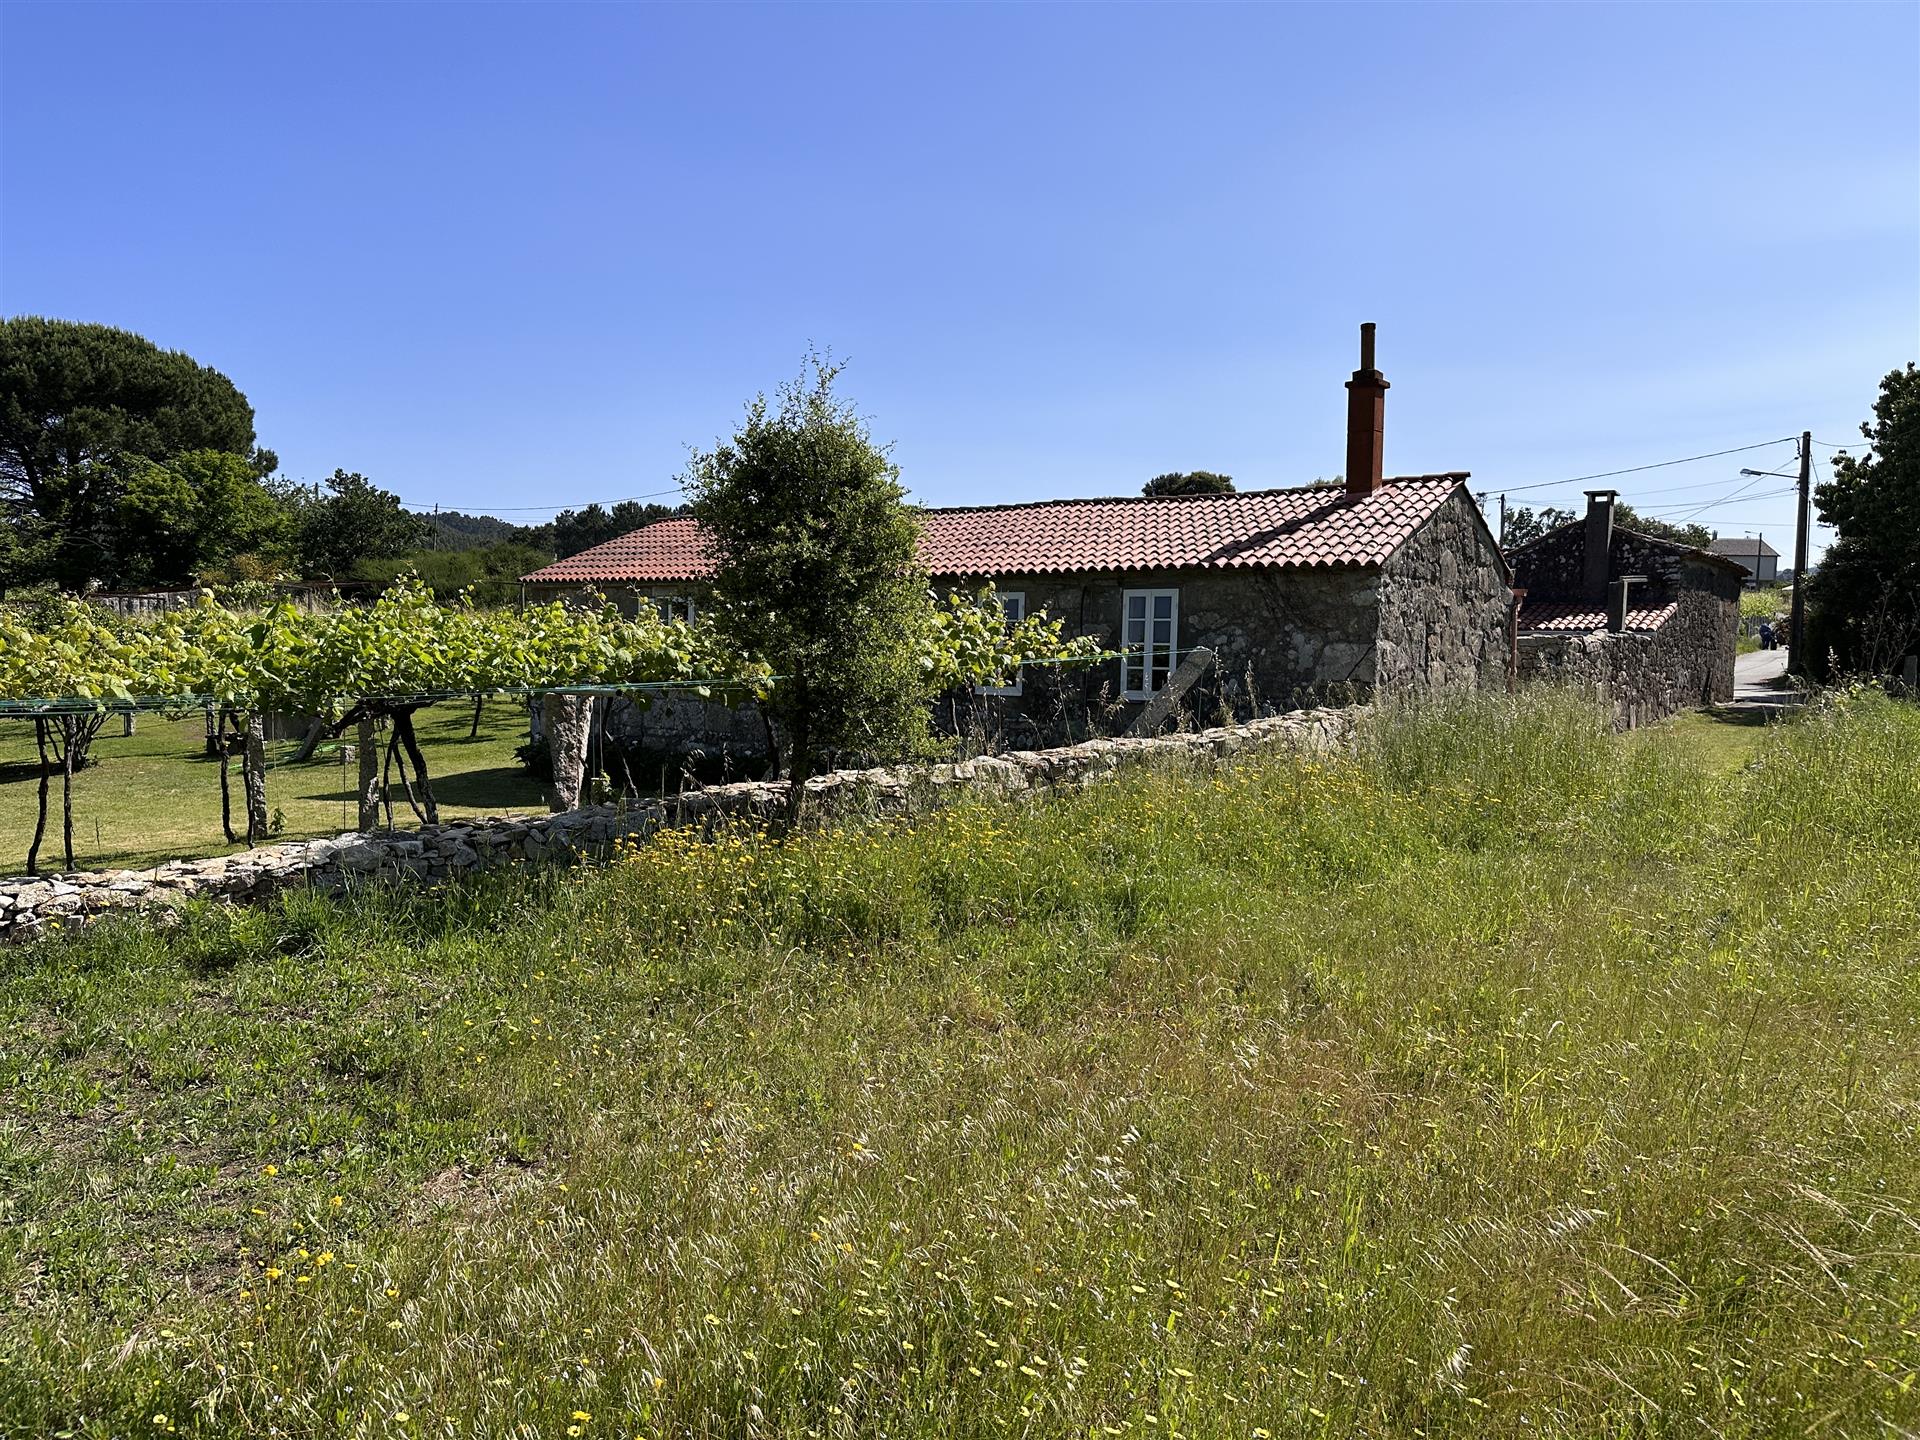 Encantadora propiedad tradicional en el Valle del Salnés, Pontevedra.